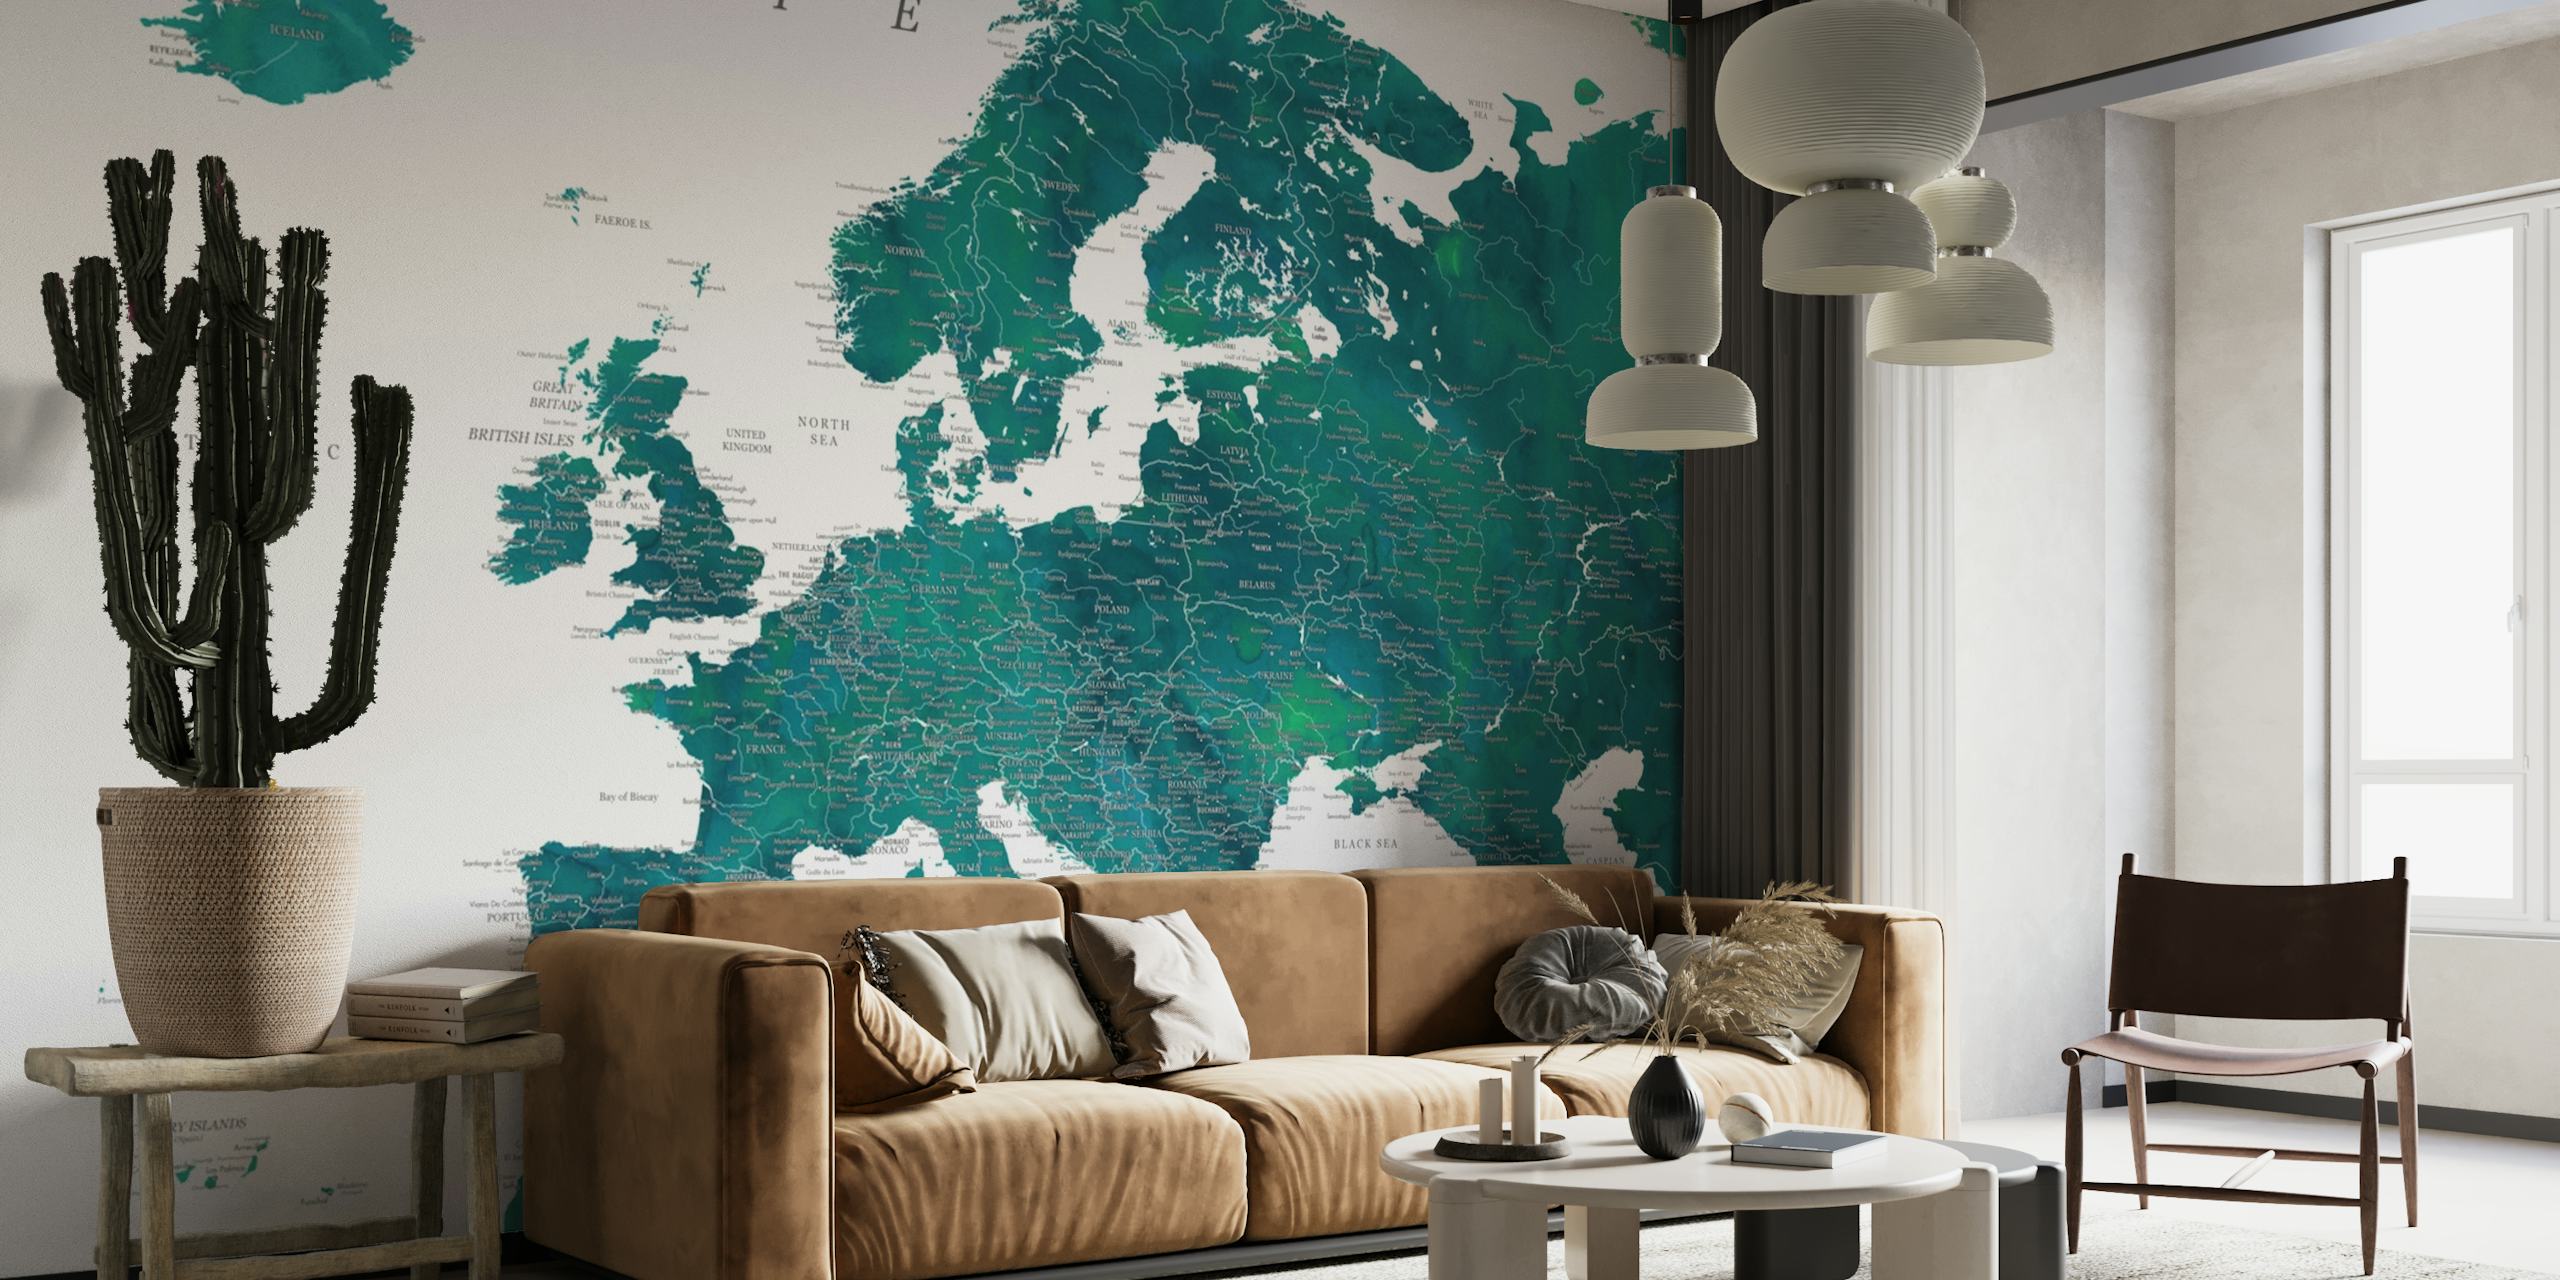 Yksityiskohtainen Euroopan kartta Nyla-seinämaalaus, joka esittelee eloisia värejä ja maantieteellisiä yksityiskohtia